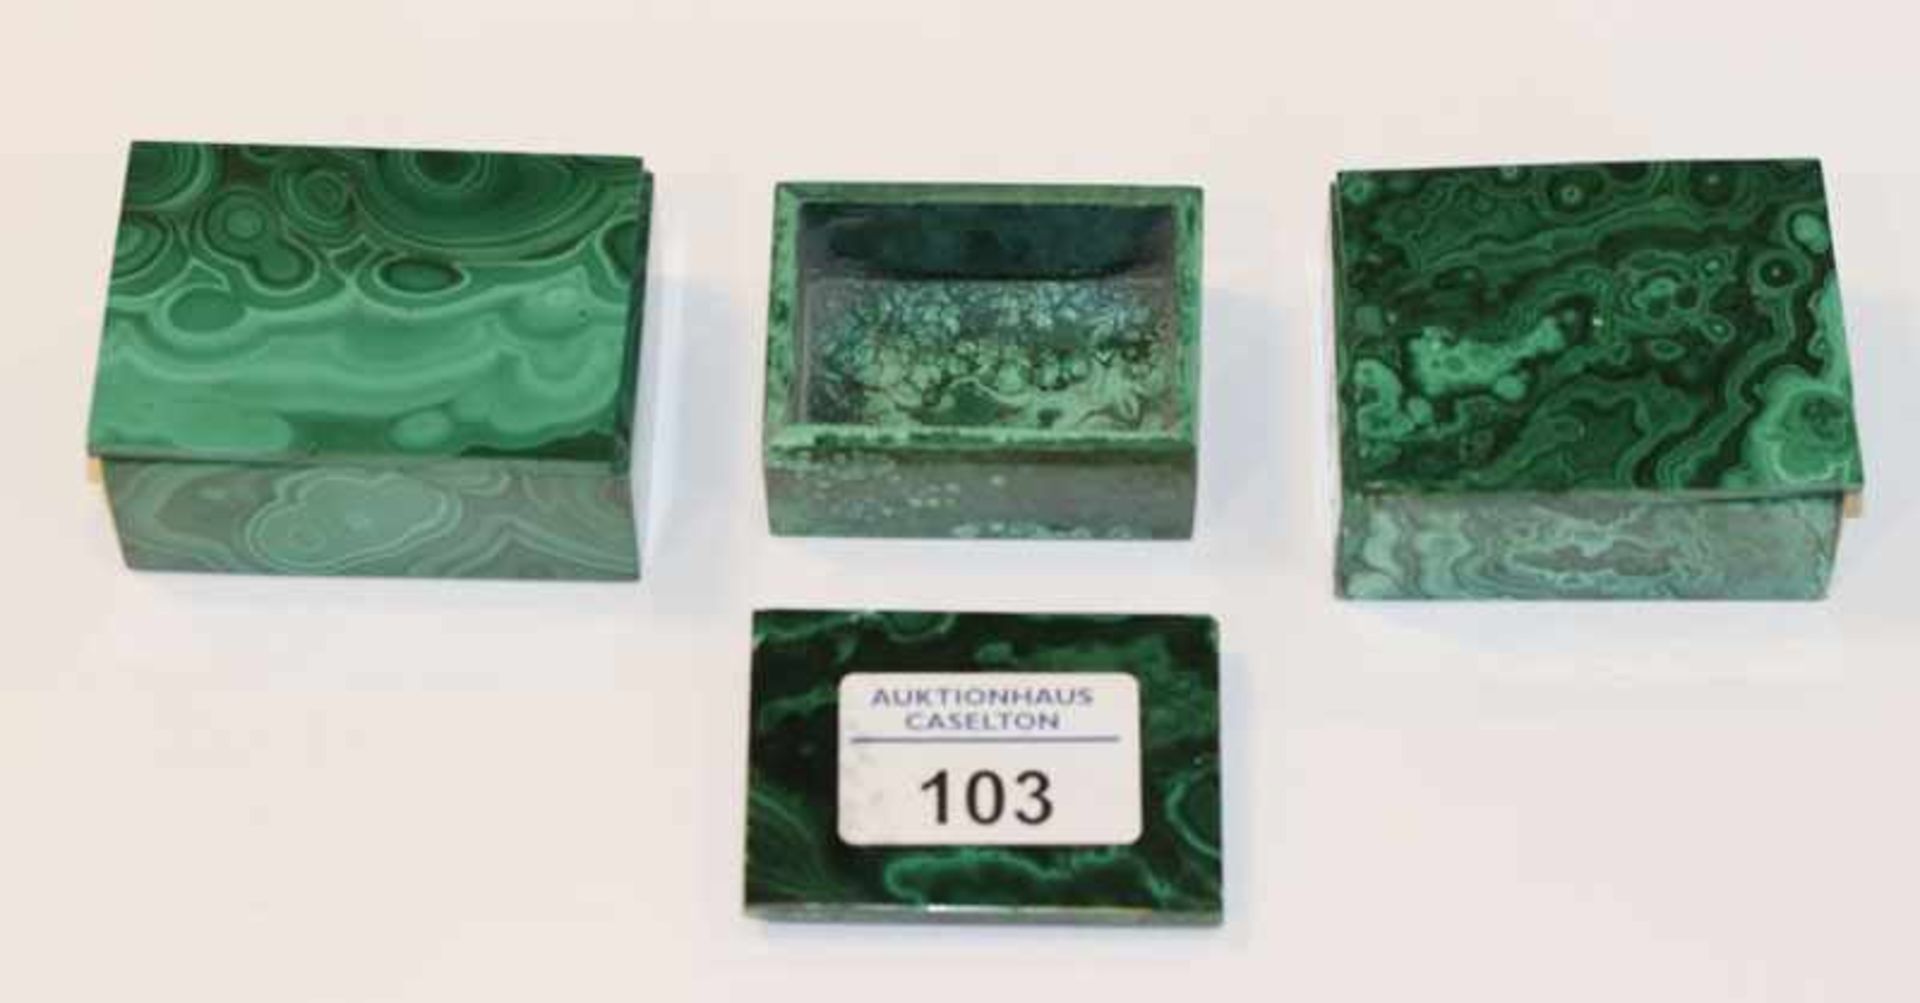 3 Malachit Deckeldosen, ein Deckel nicht passend, eine Dose beschädigt, H 3 cm, B 6,6 cm, B 5 cm